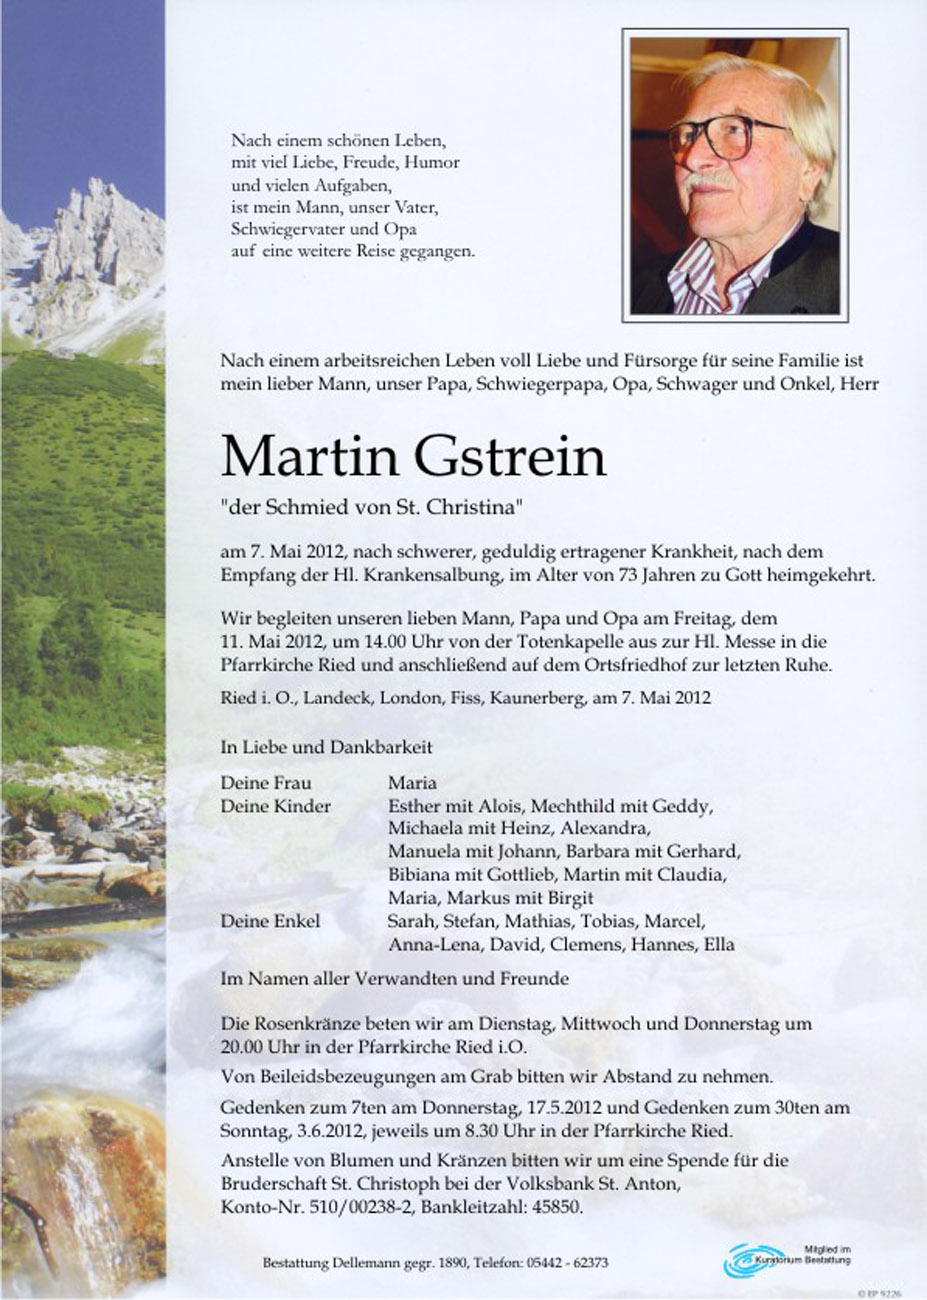   Martin Gstrein